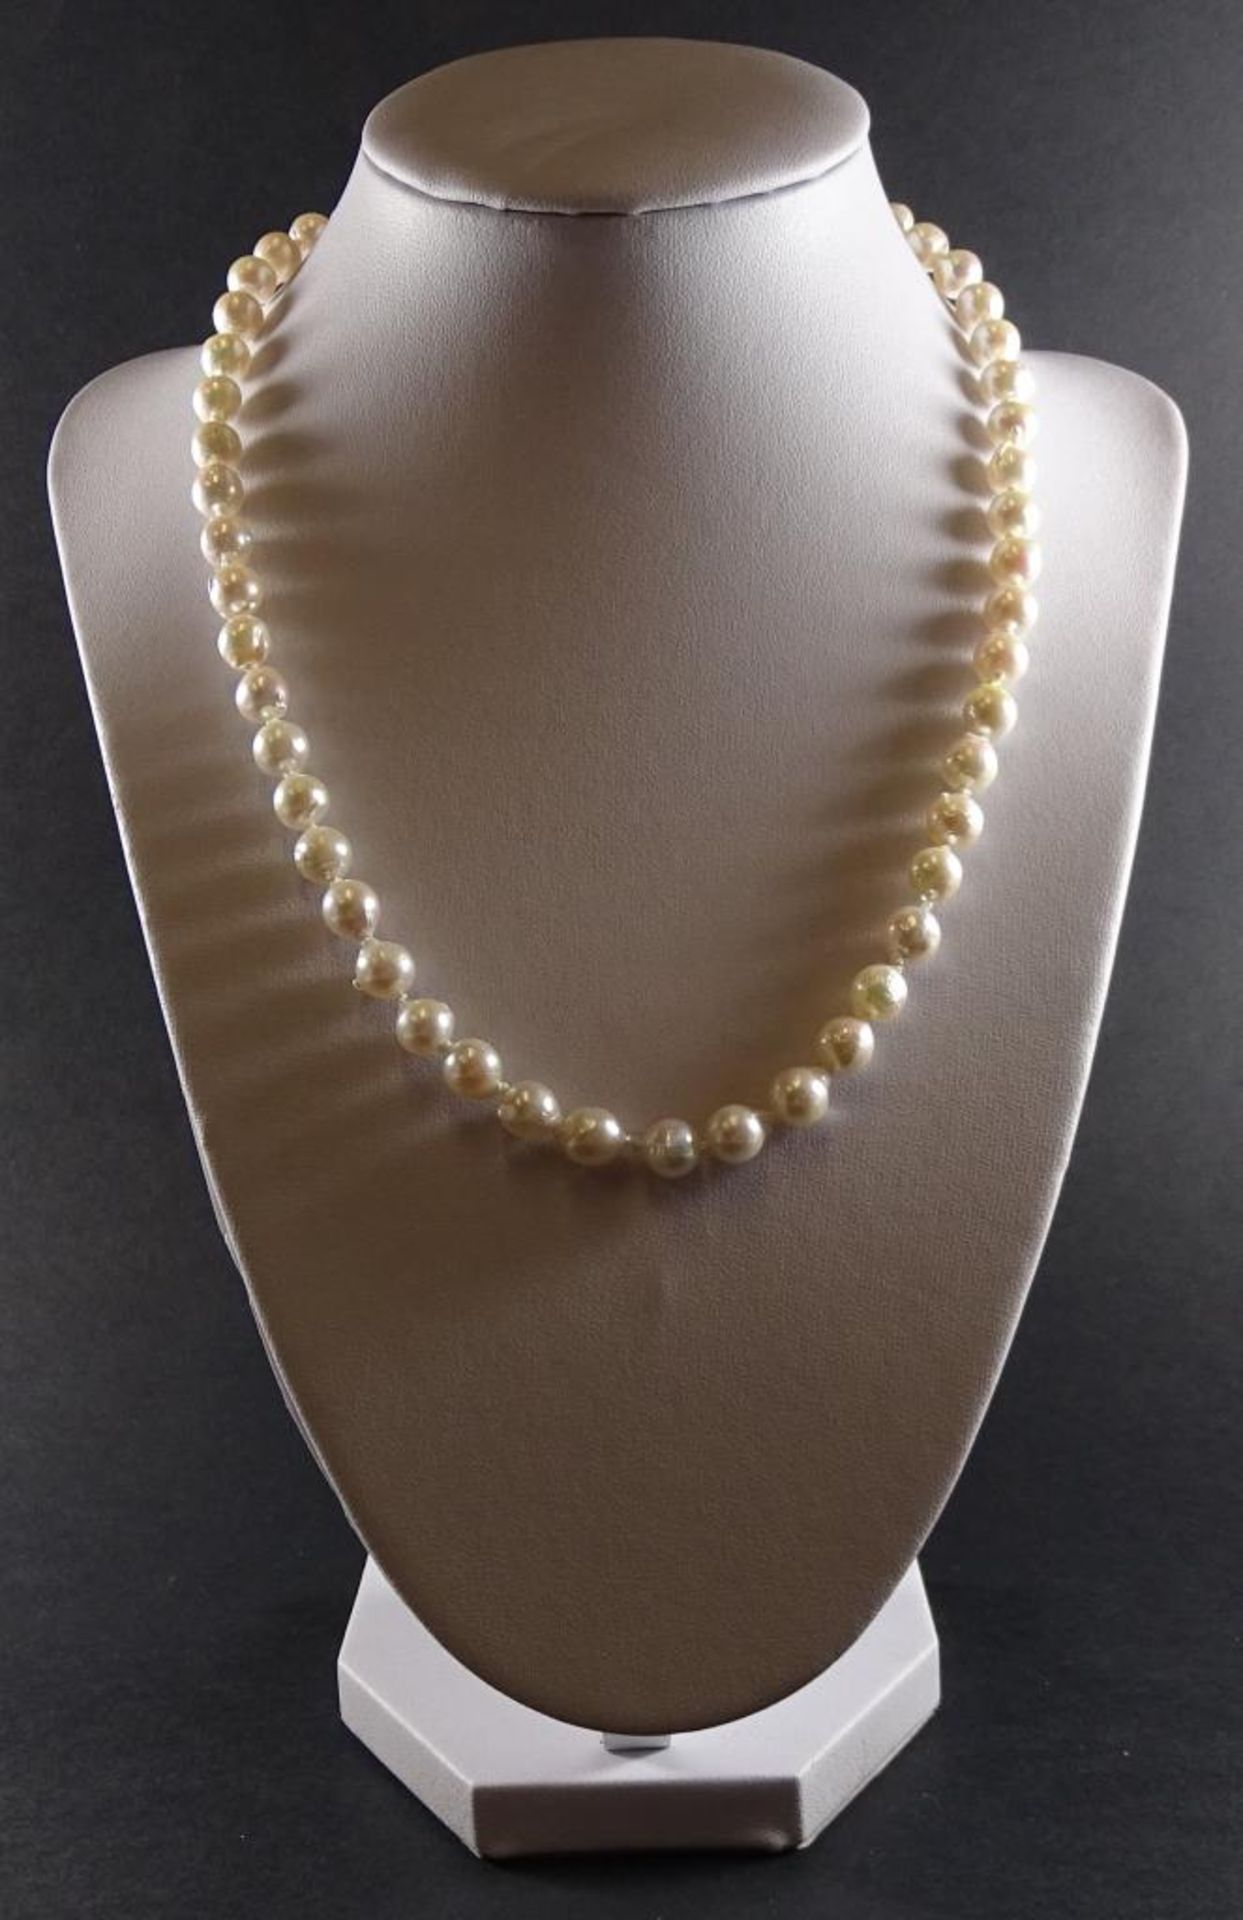 Zuchtperlen Halskette mit Silberschliesse -925-,L-44cm, Perle d-6,8-7,4mm,Neu und ungetragen aus